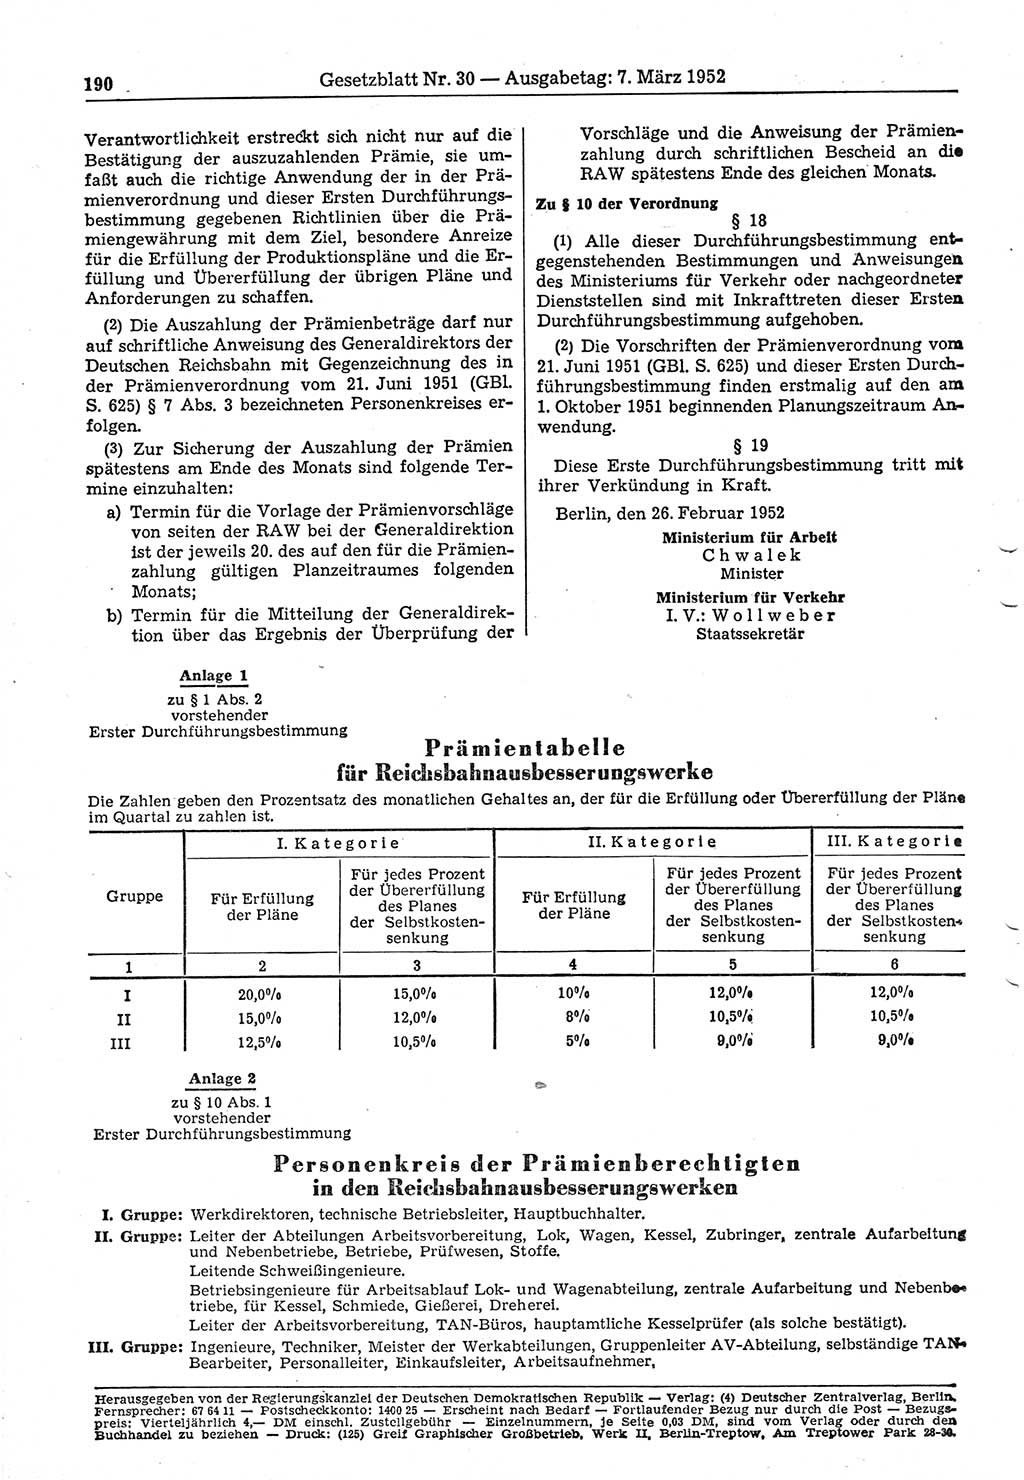 Gesetzblatt (GBl.) der Deutschen Demokratischen Republik (DDR) 1952, Seite 190 (GBl. DDR 1952, S. 190)